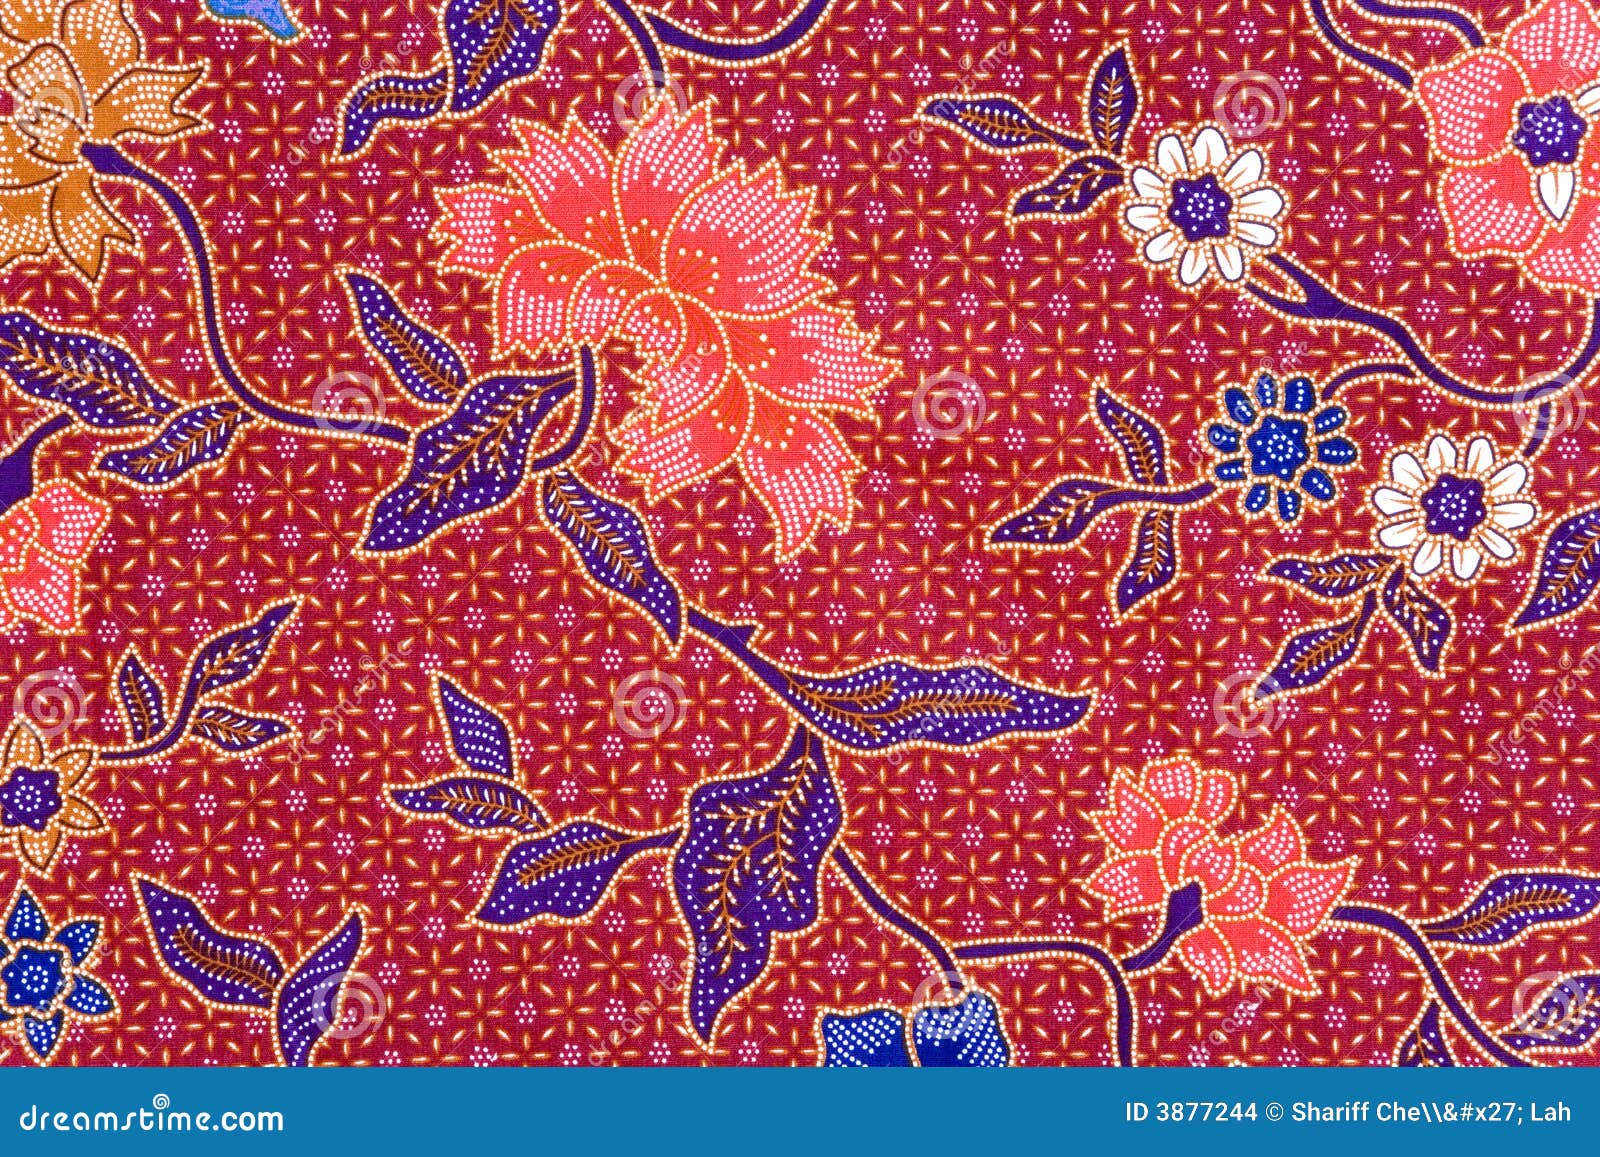  Indonesian  Batik  Sarong Stock Images Image  3877244